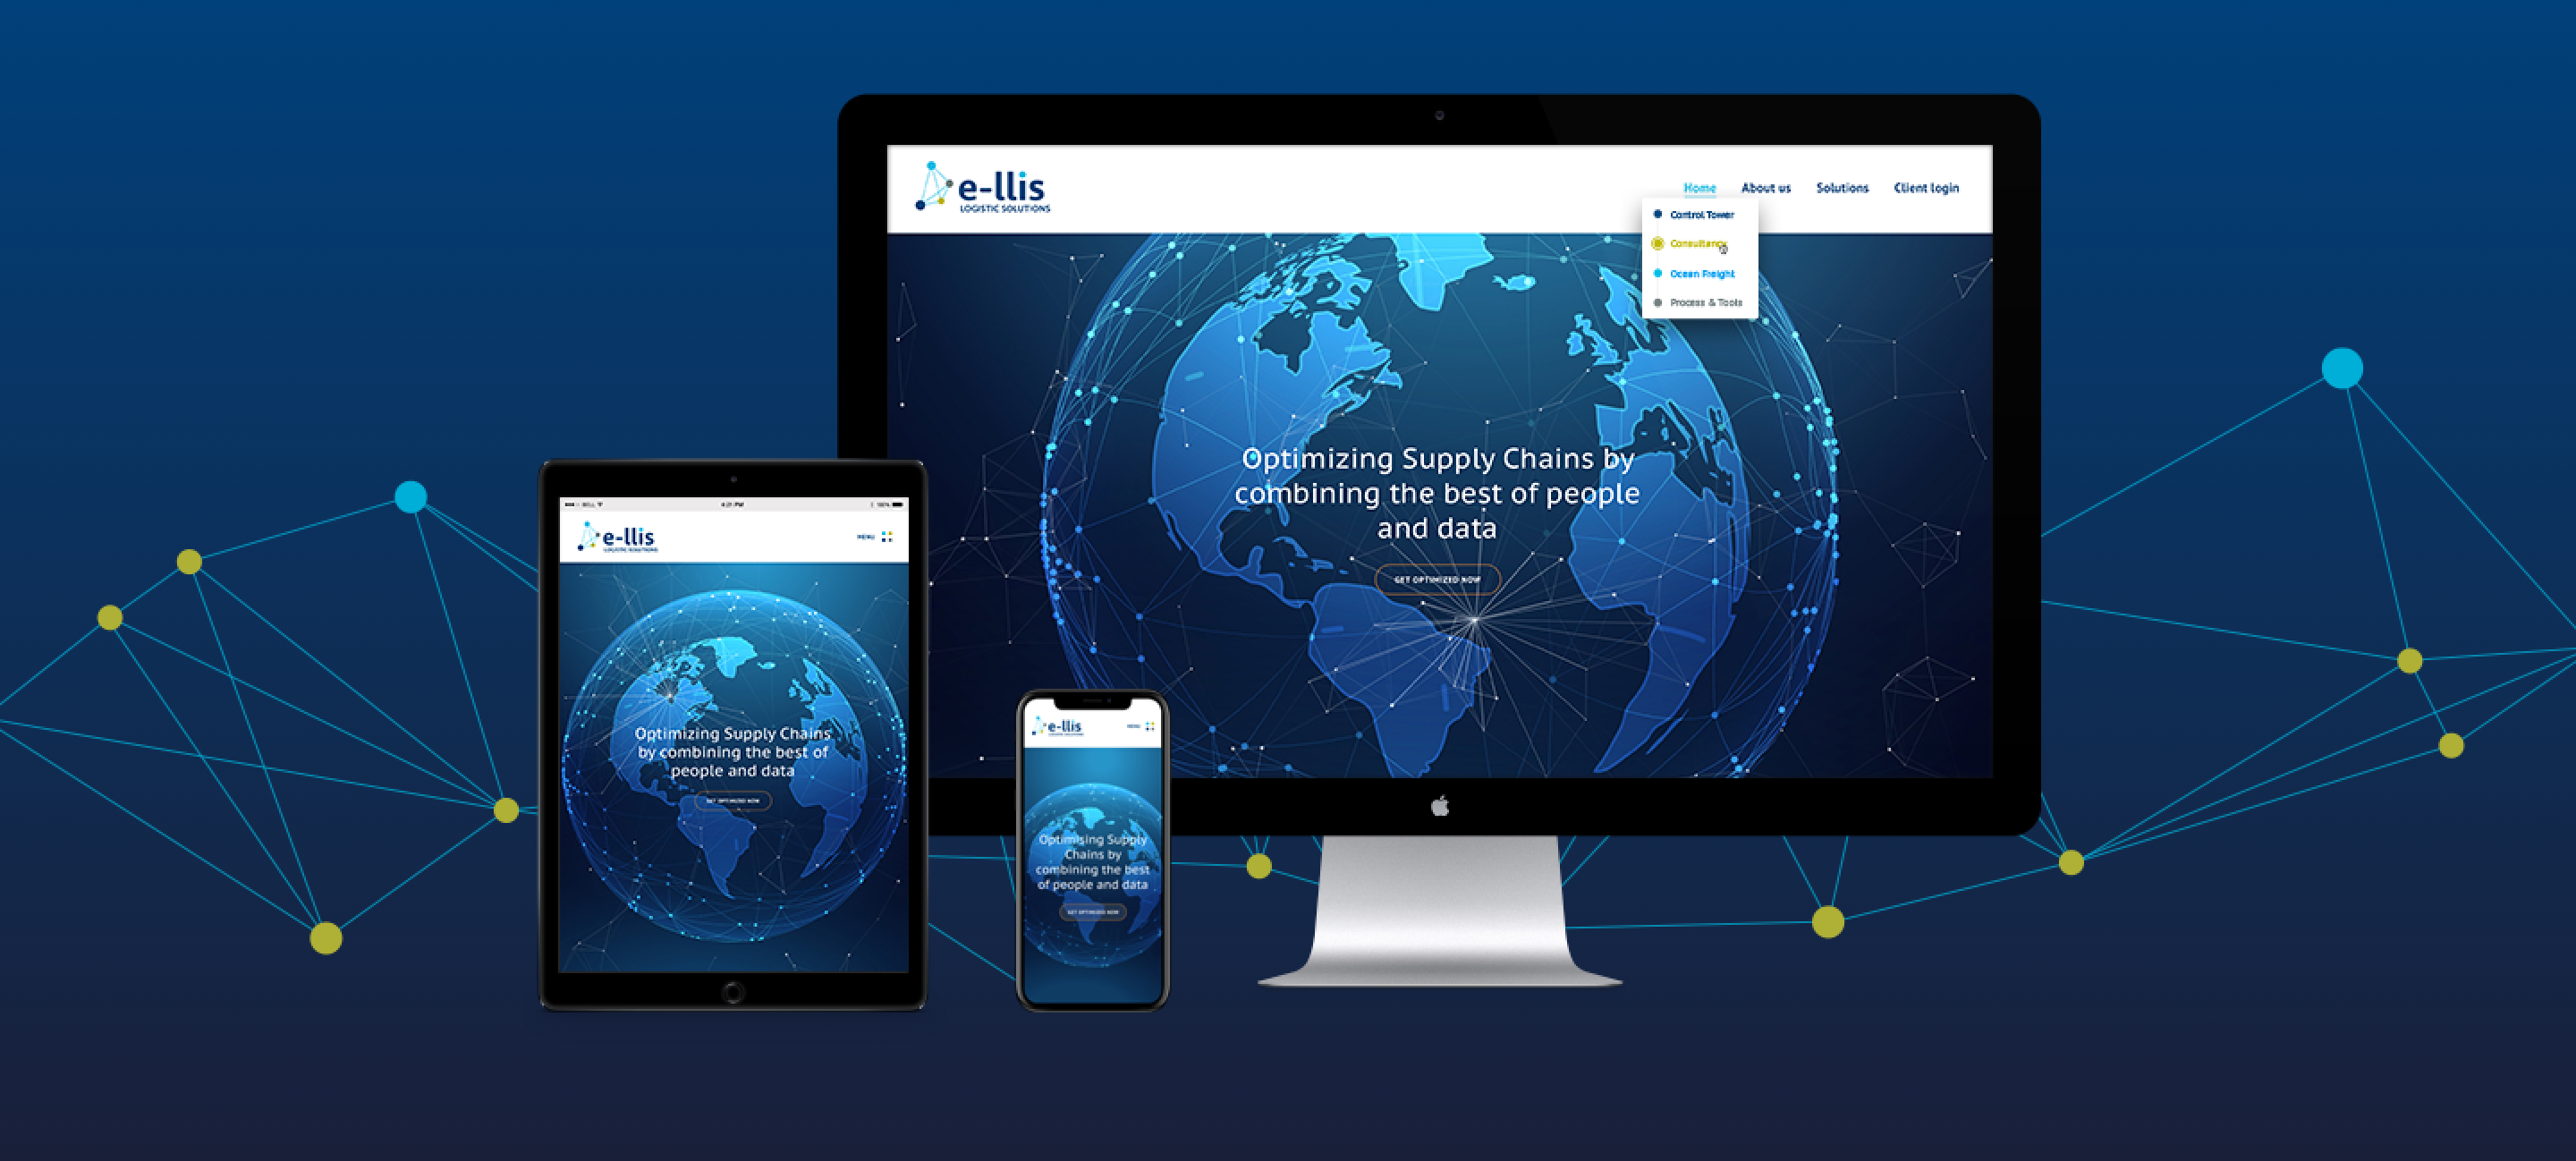 E-llis maatwerk website - Rene Verkaart)